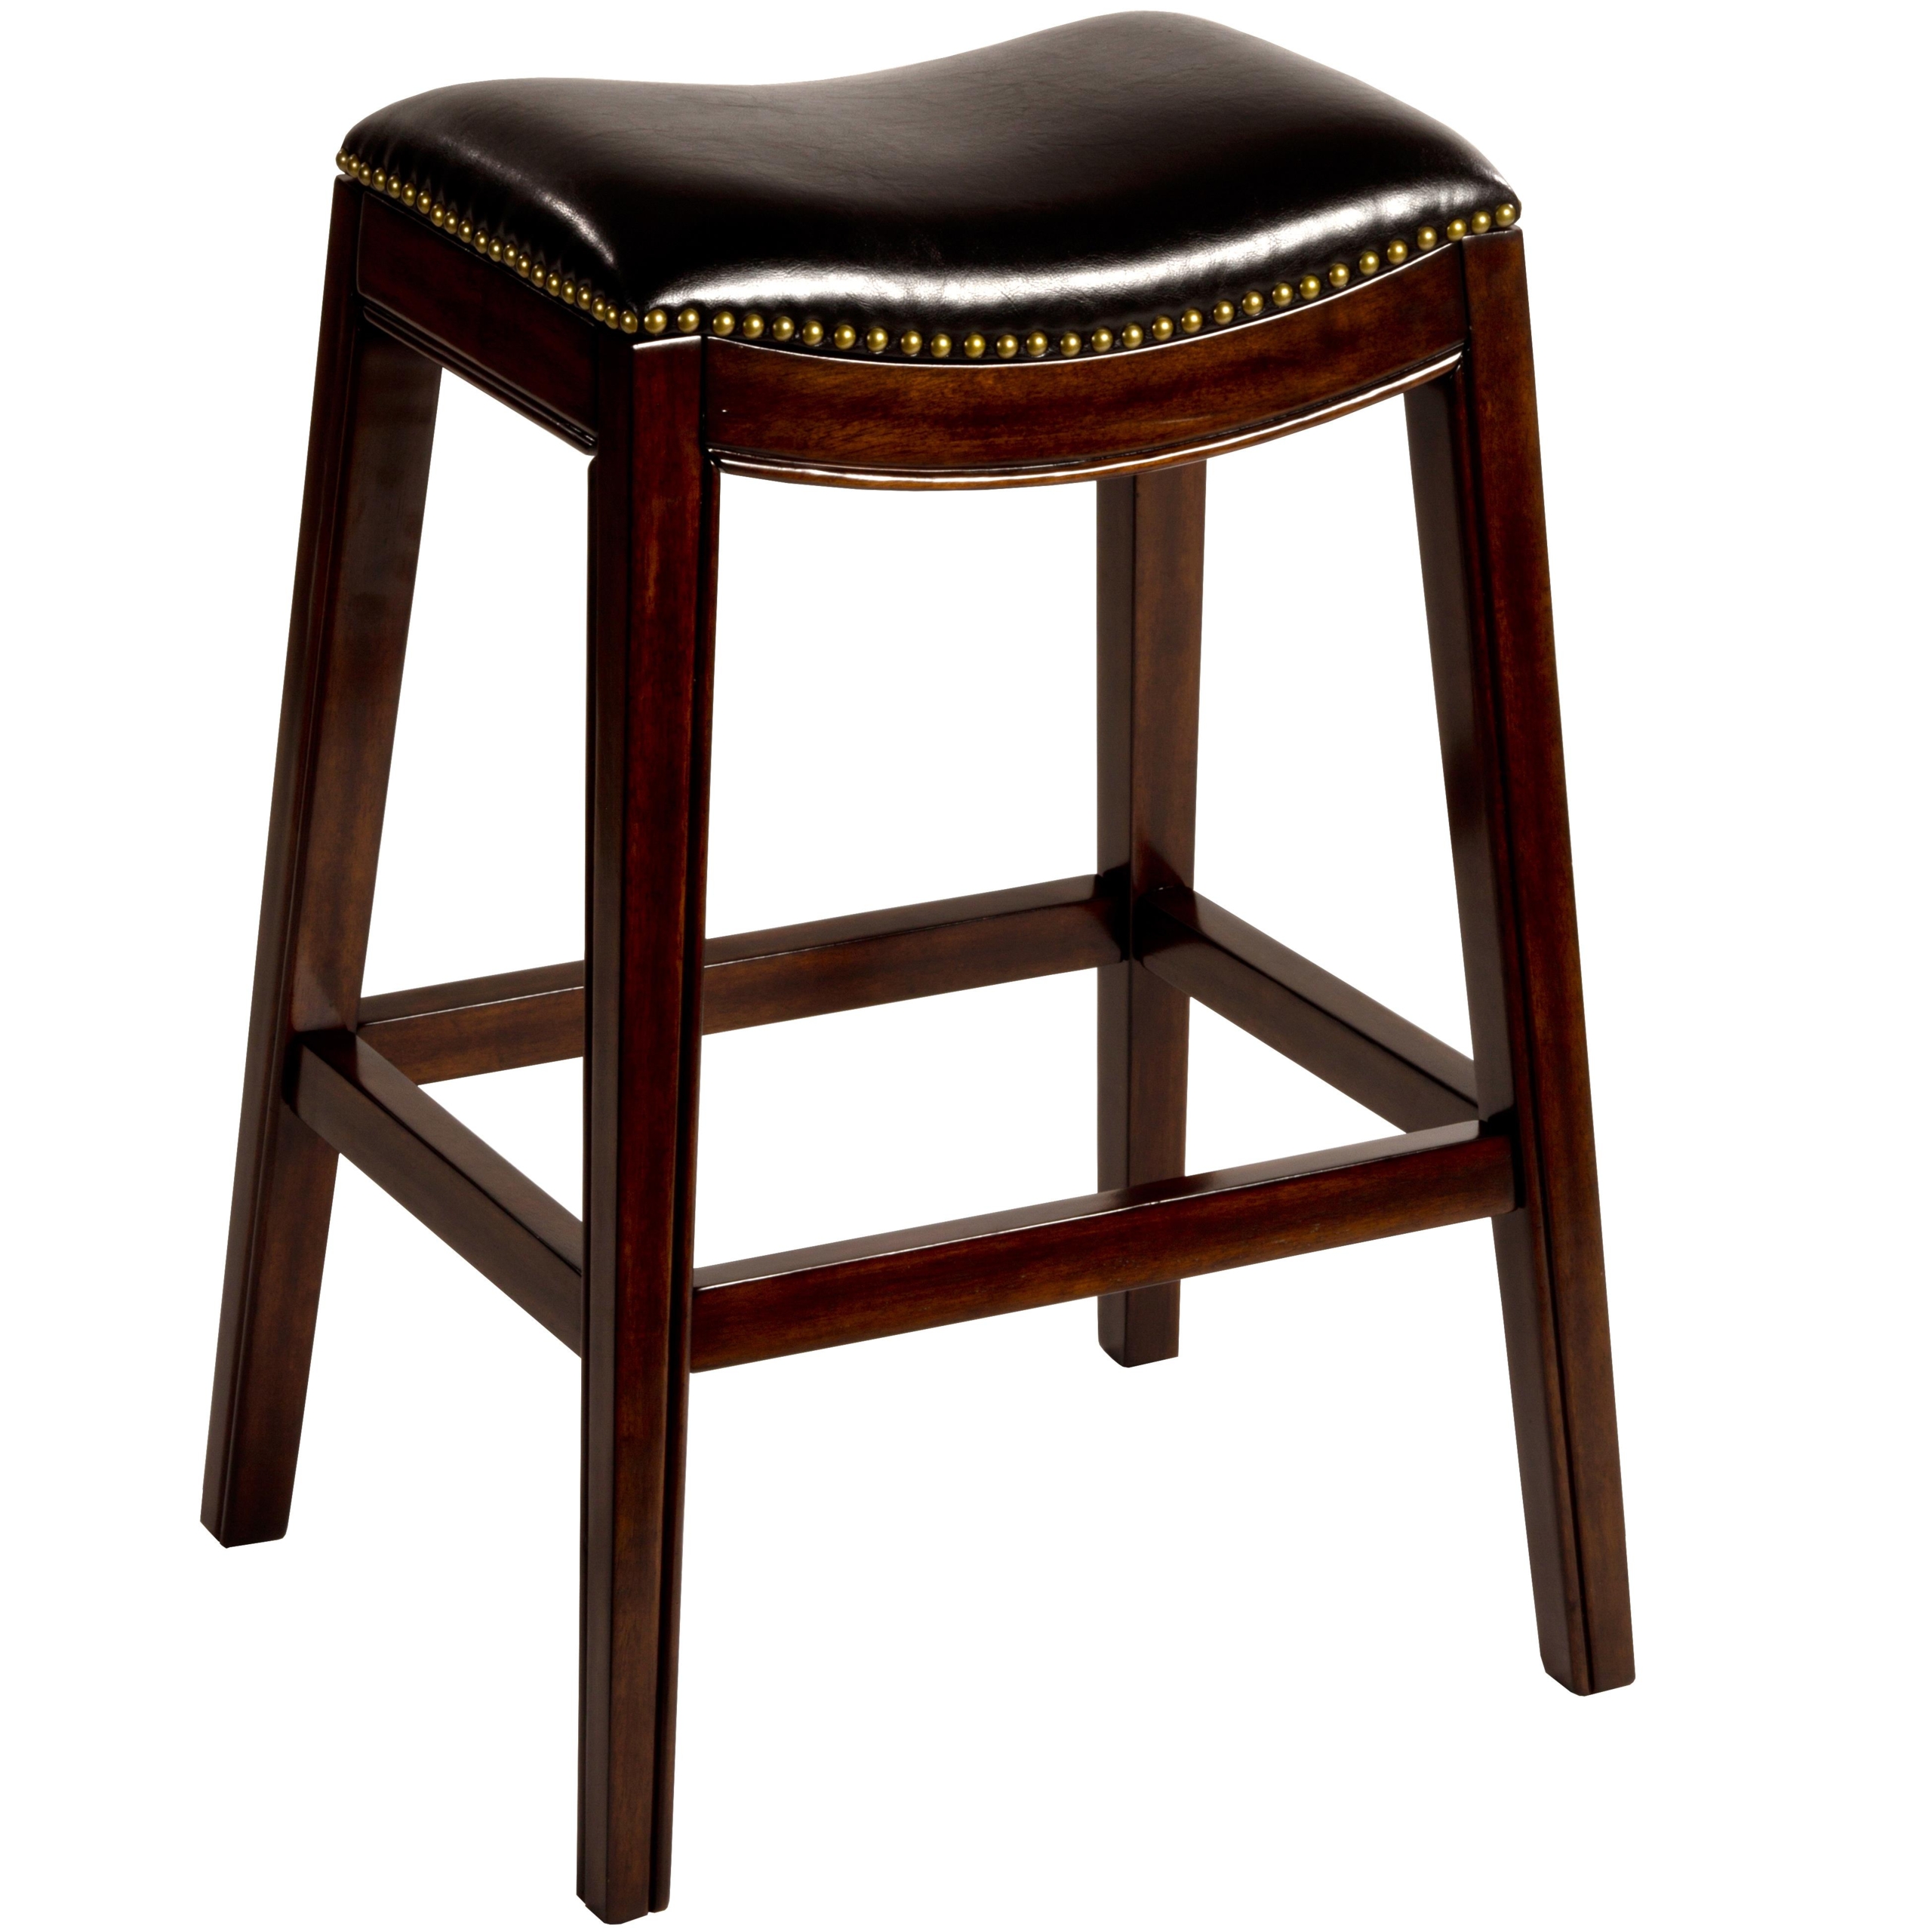 Leather saddle bar stool 1